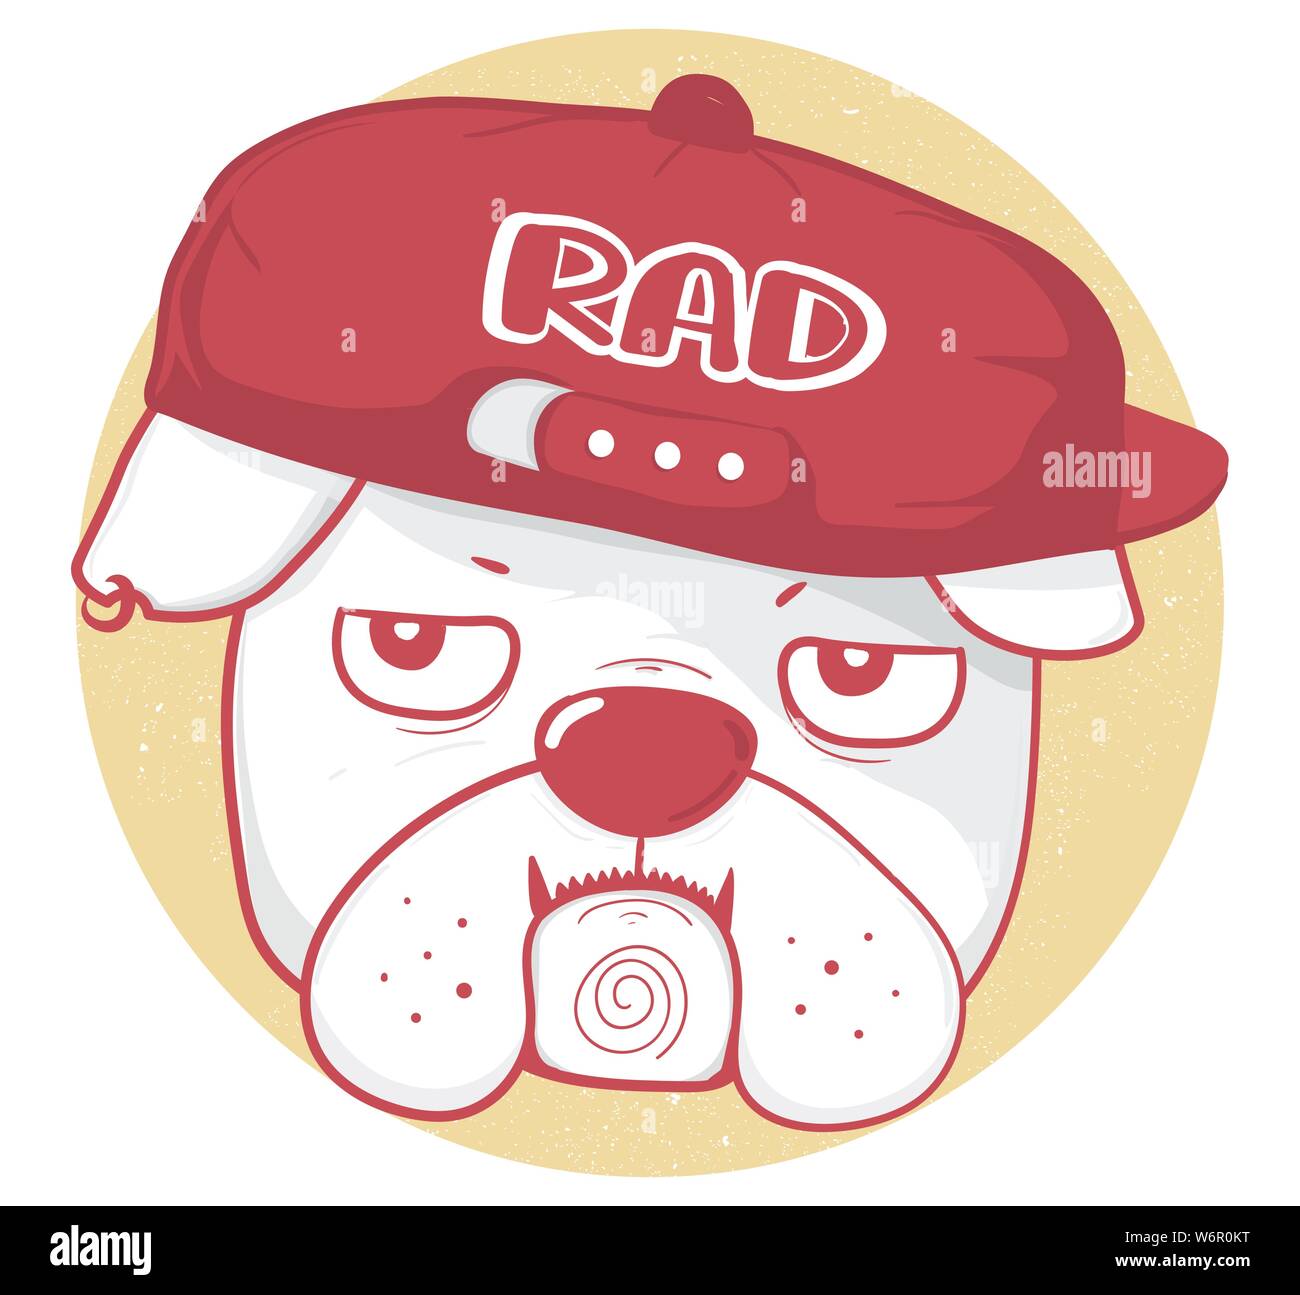 Visage de grincheux bulldog porter baseball cap avec RAD du texte et des dessins en couleur rouge contour style vintage, grande idée pour enfant, enfant, tshirt, vêtements de conception Illustration de Vecteur